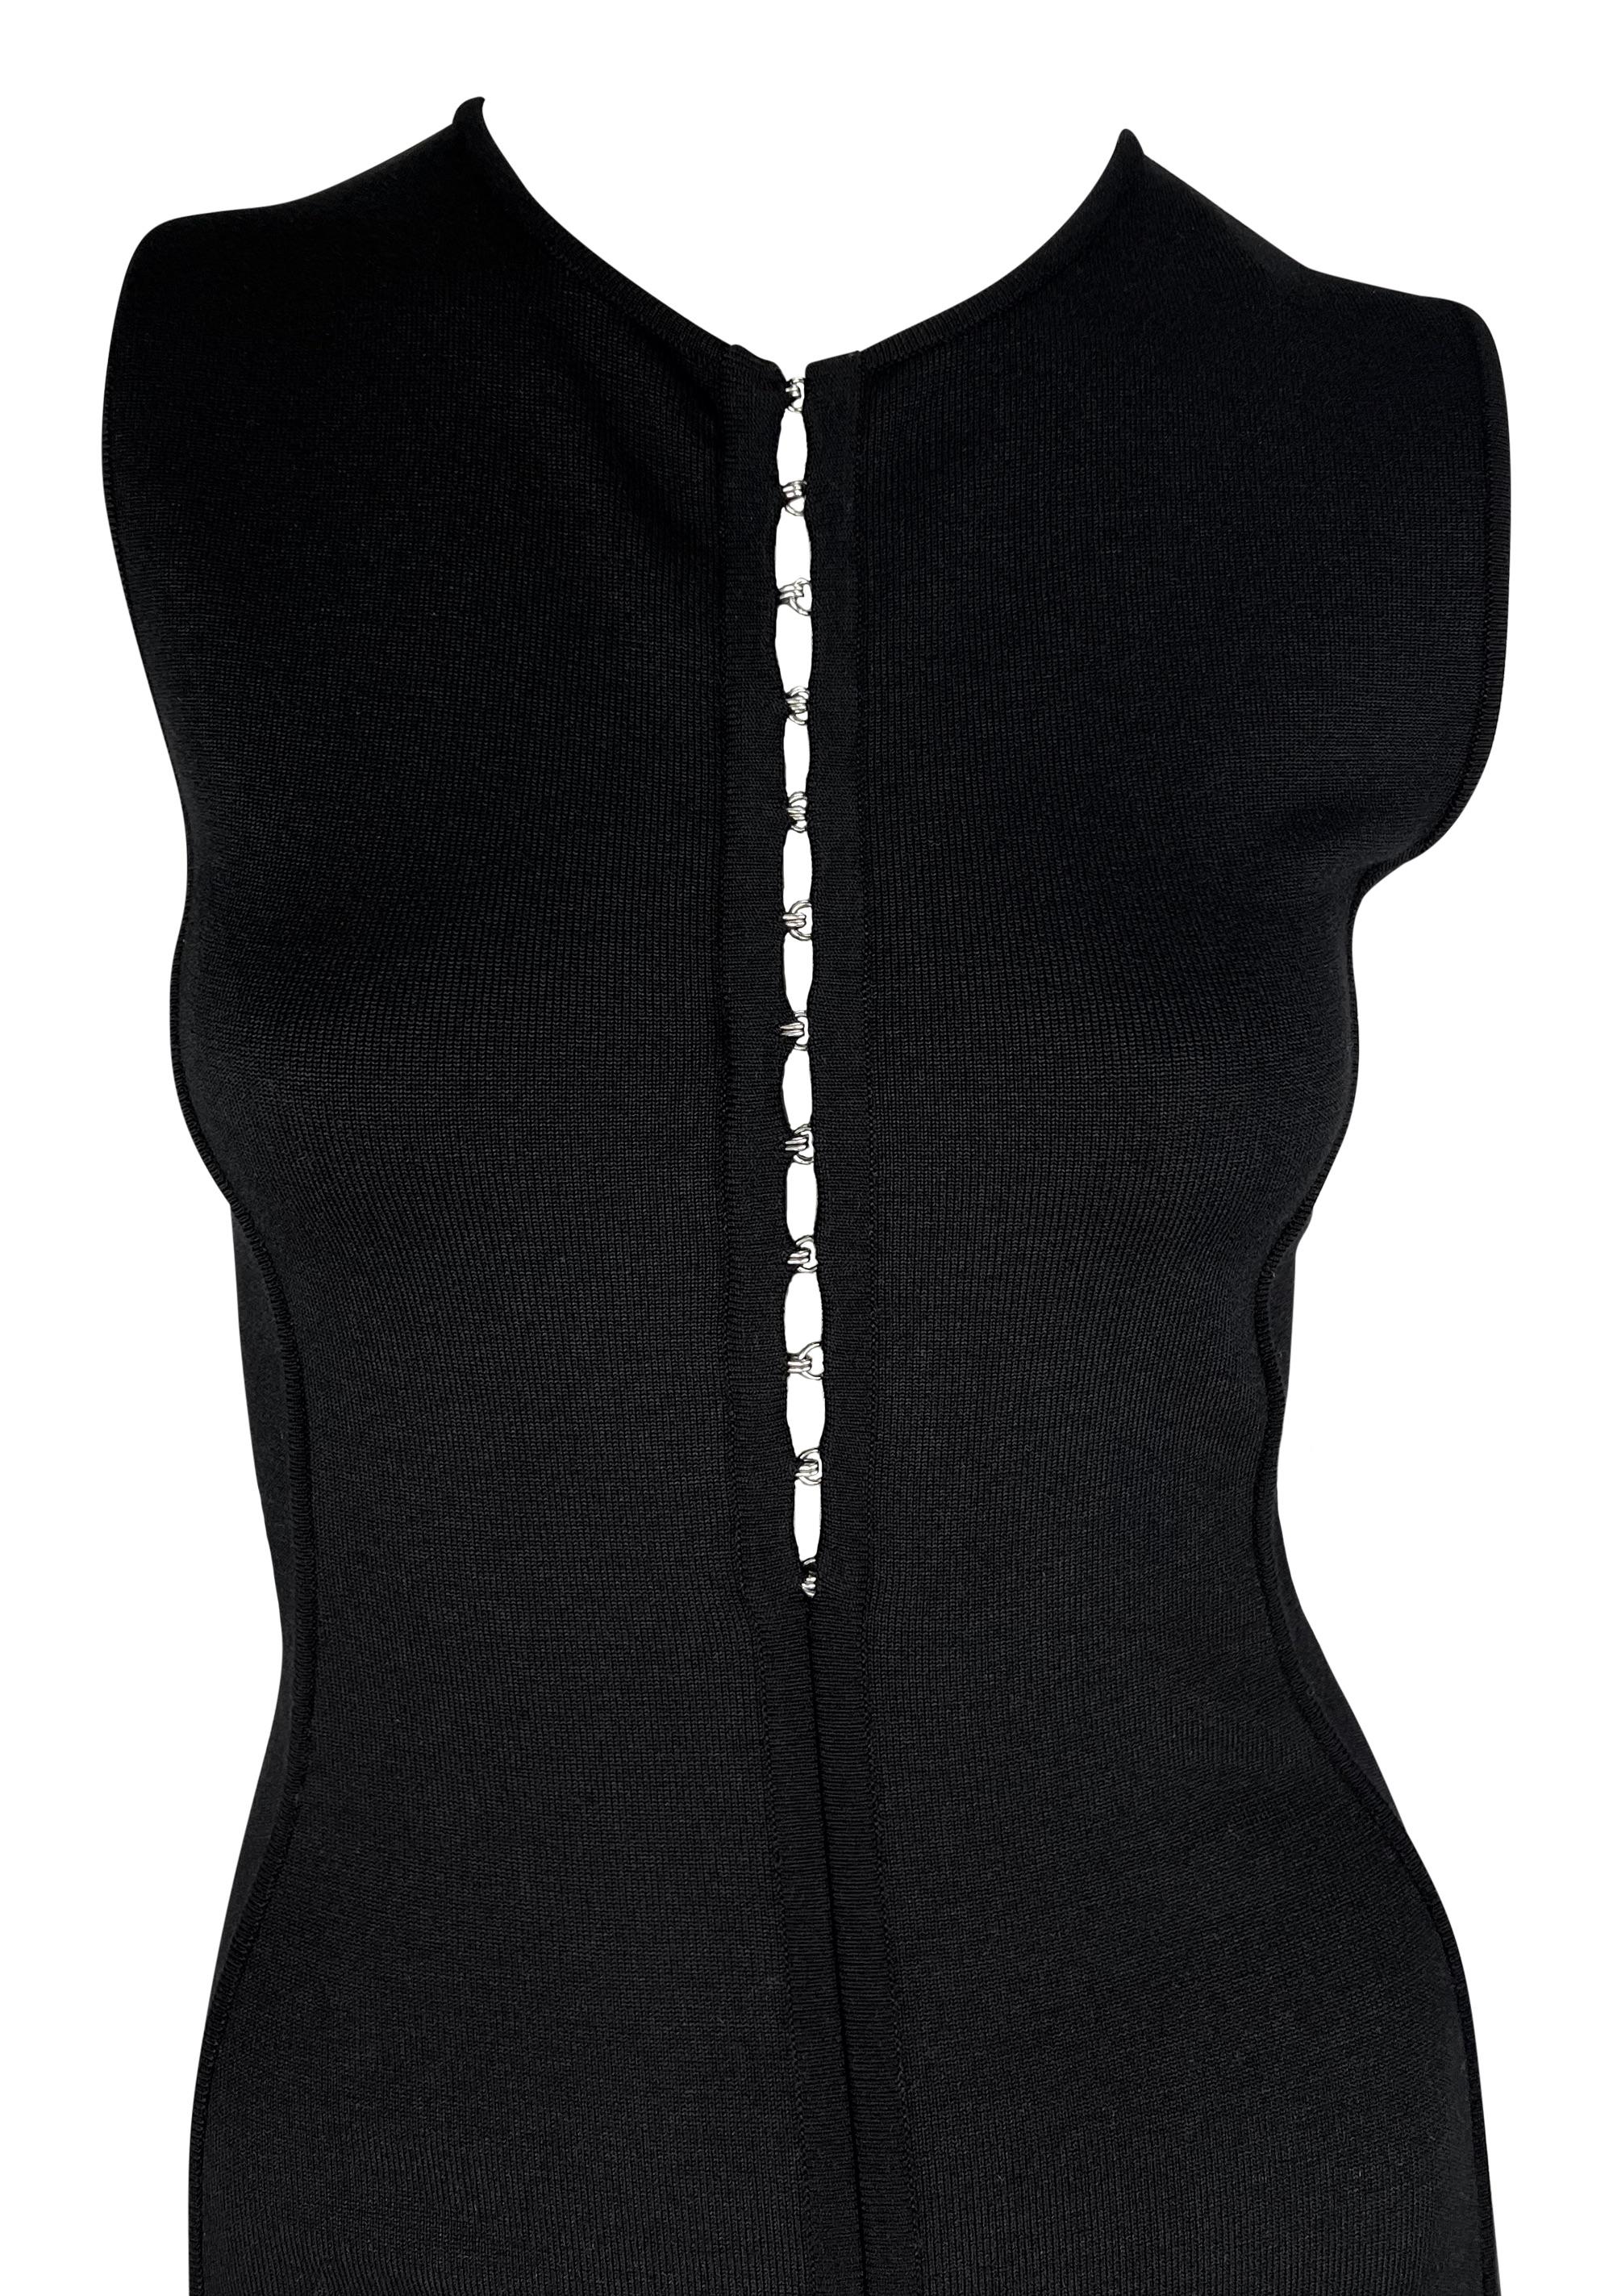 Donatella Versace hat dieses schwarze Bodycon-Kleid aus Strick von Gianni Versace für die Frühjahr/Sommer-Kollektion 2002 entworfen. Das ärmellose kleine Schwarze hat einen Rundhalsausschnitt und ist mit einem silbernen Haken- und Ösenverschluss auf